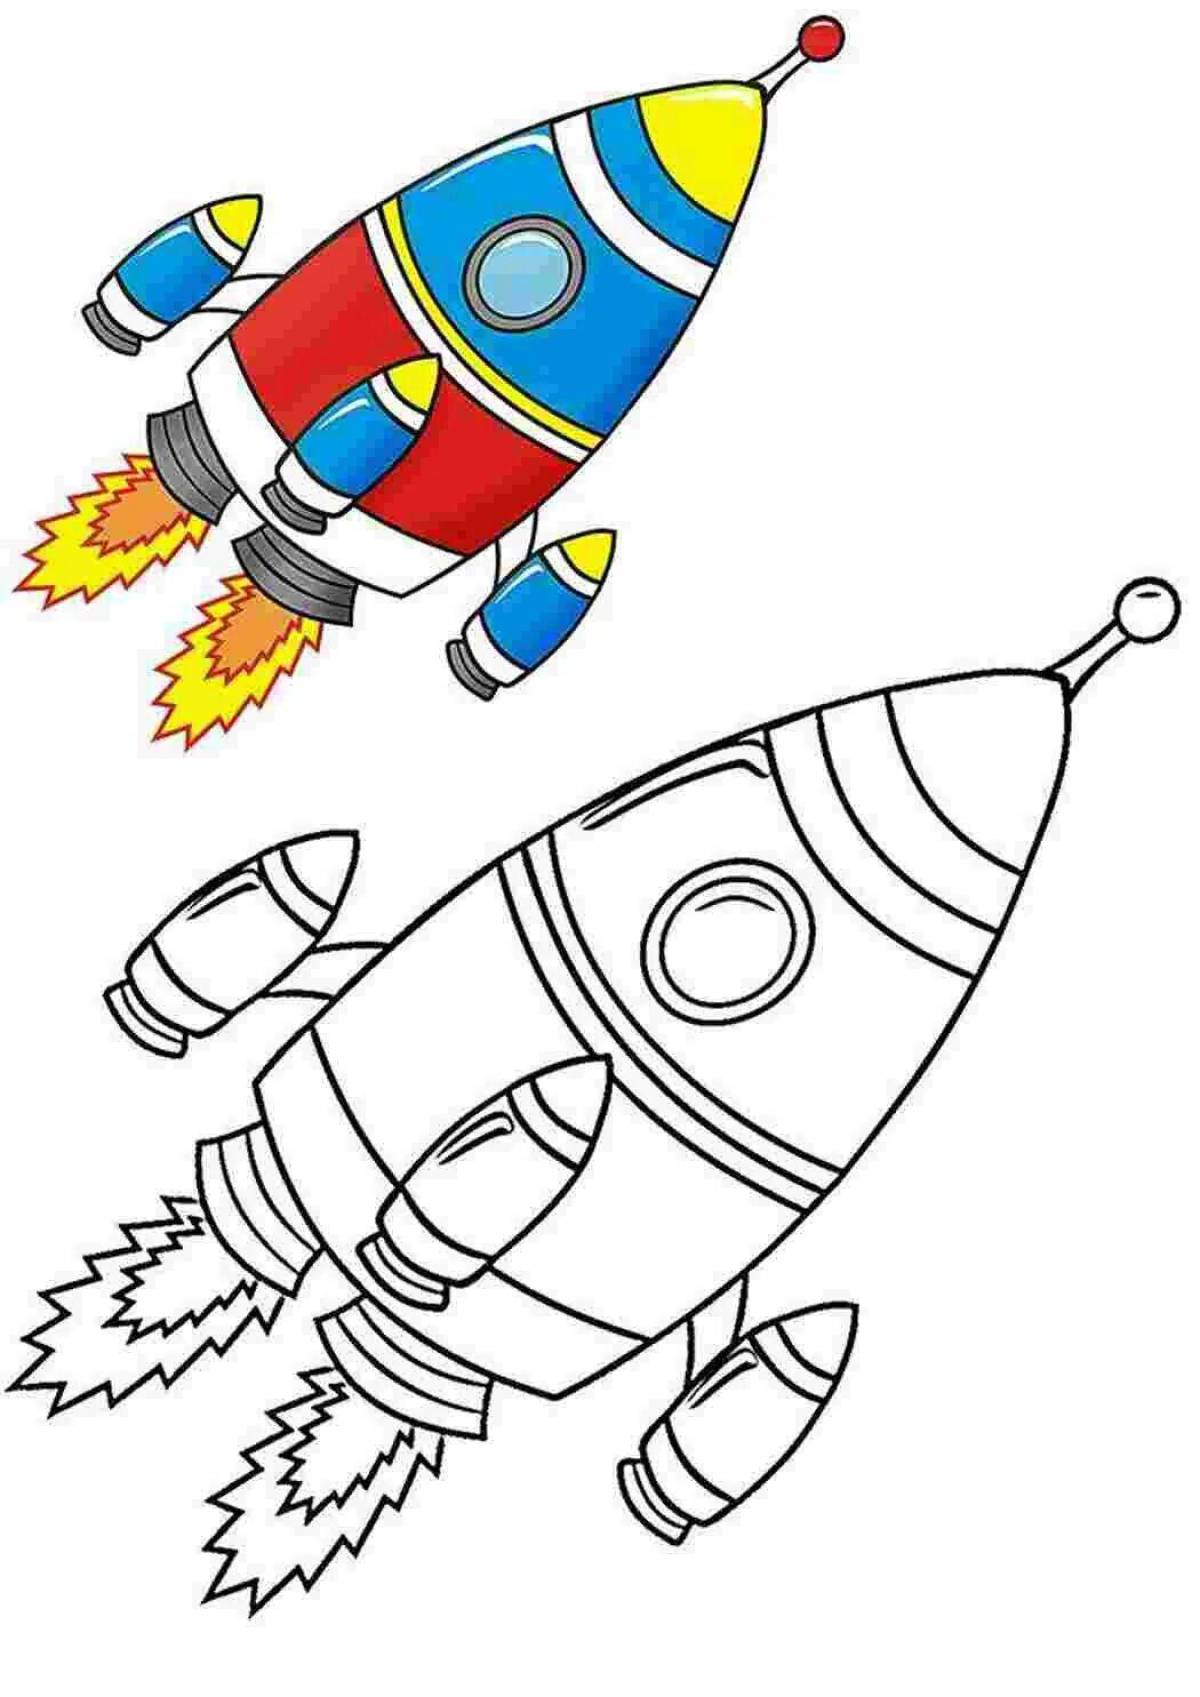 Ракета для детей 5 6 лет. Ракета раскраска. Ракета раскраска для детей. Космическая ракета раскраска. Раскраска ракета в космосе для детей.